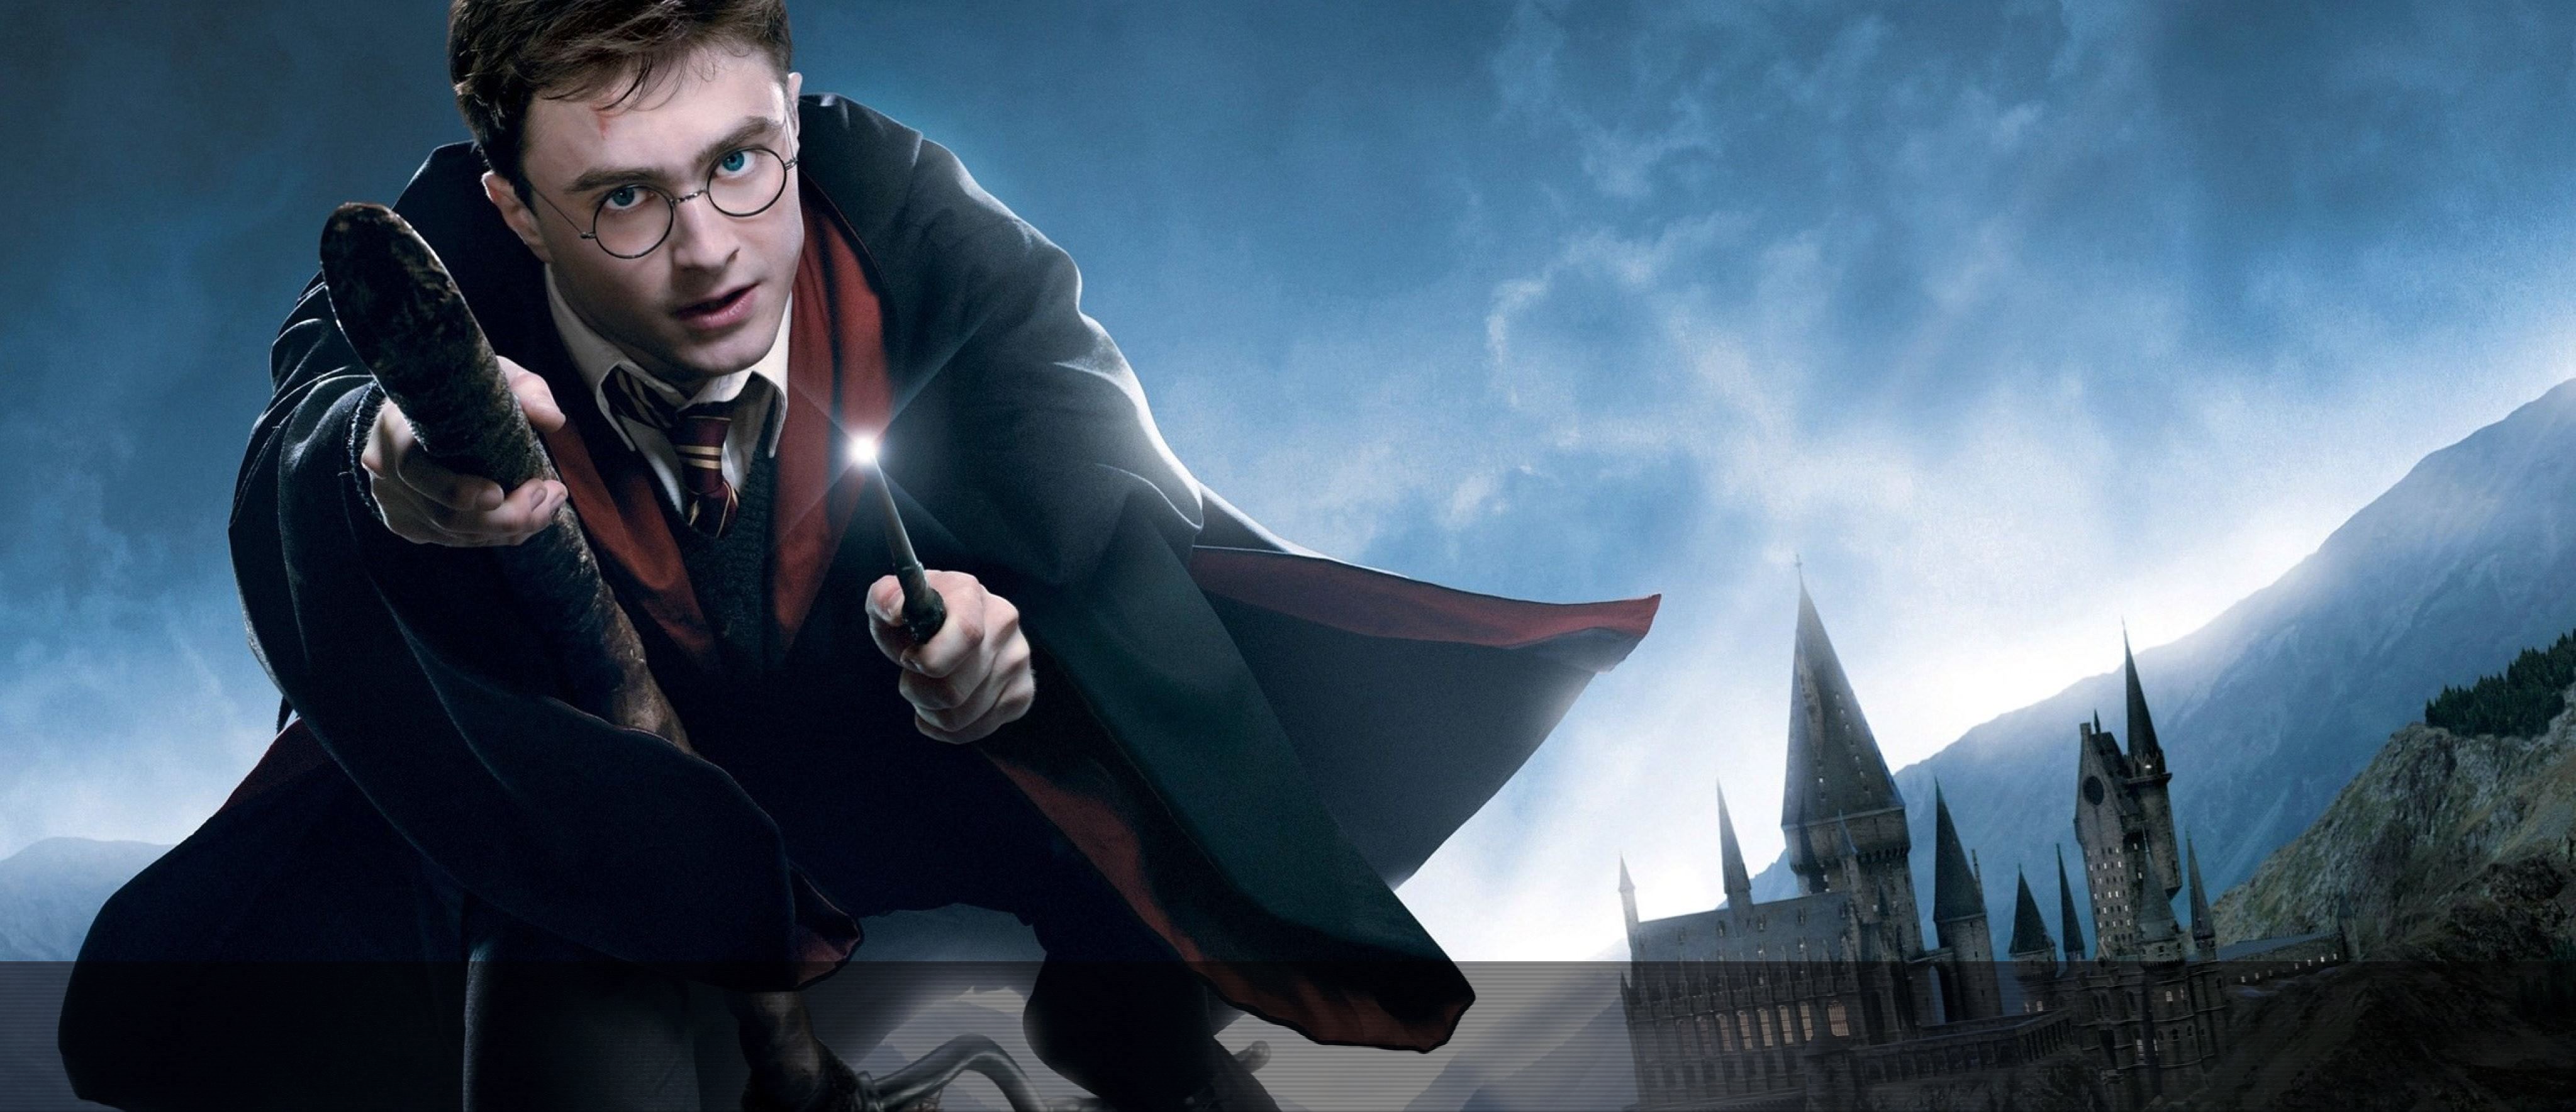 Крис Коламбус хочет экранизировать пьесу "Гарри Поттер и Проклятое дитя" с оригинальными актерами